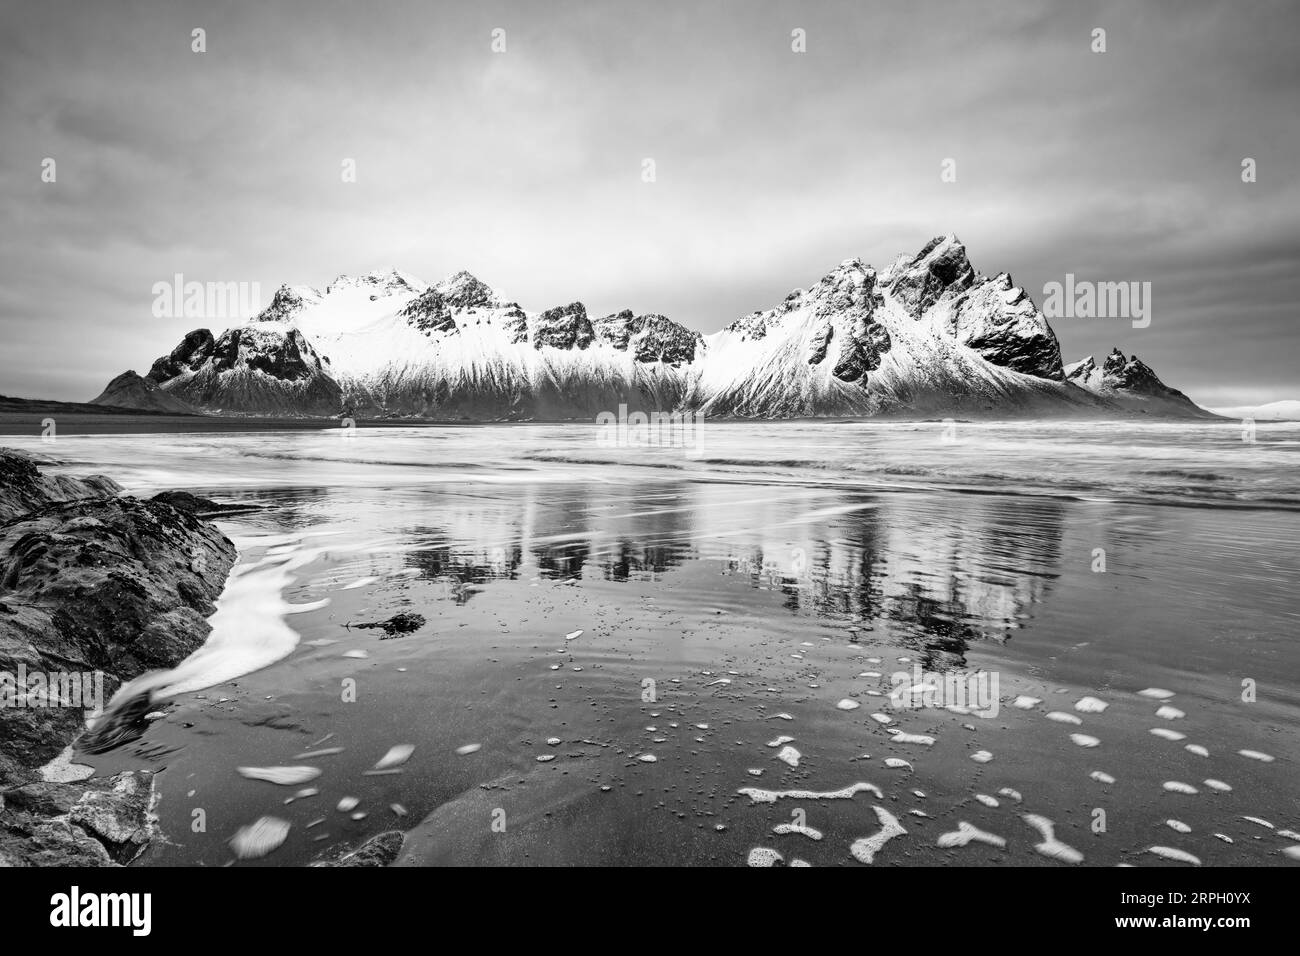 Image en noir et blanc d'une formation de montagne couverte de neige reflétée dans l'eau d'une plage de sable de lave noire, grand effet de profondeur - lieu : Islande, Banque D'Images